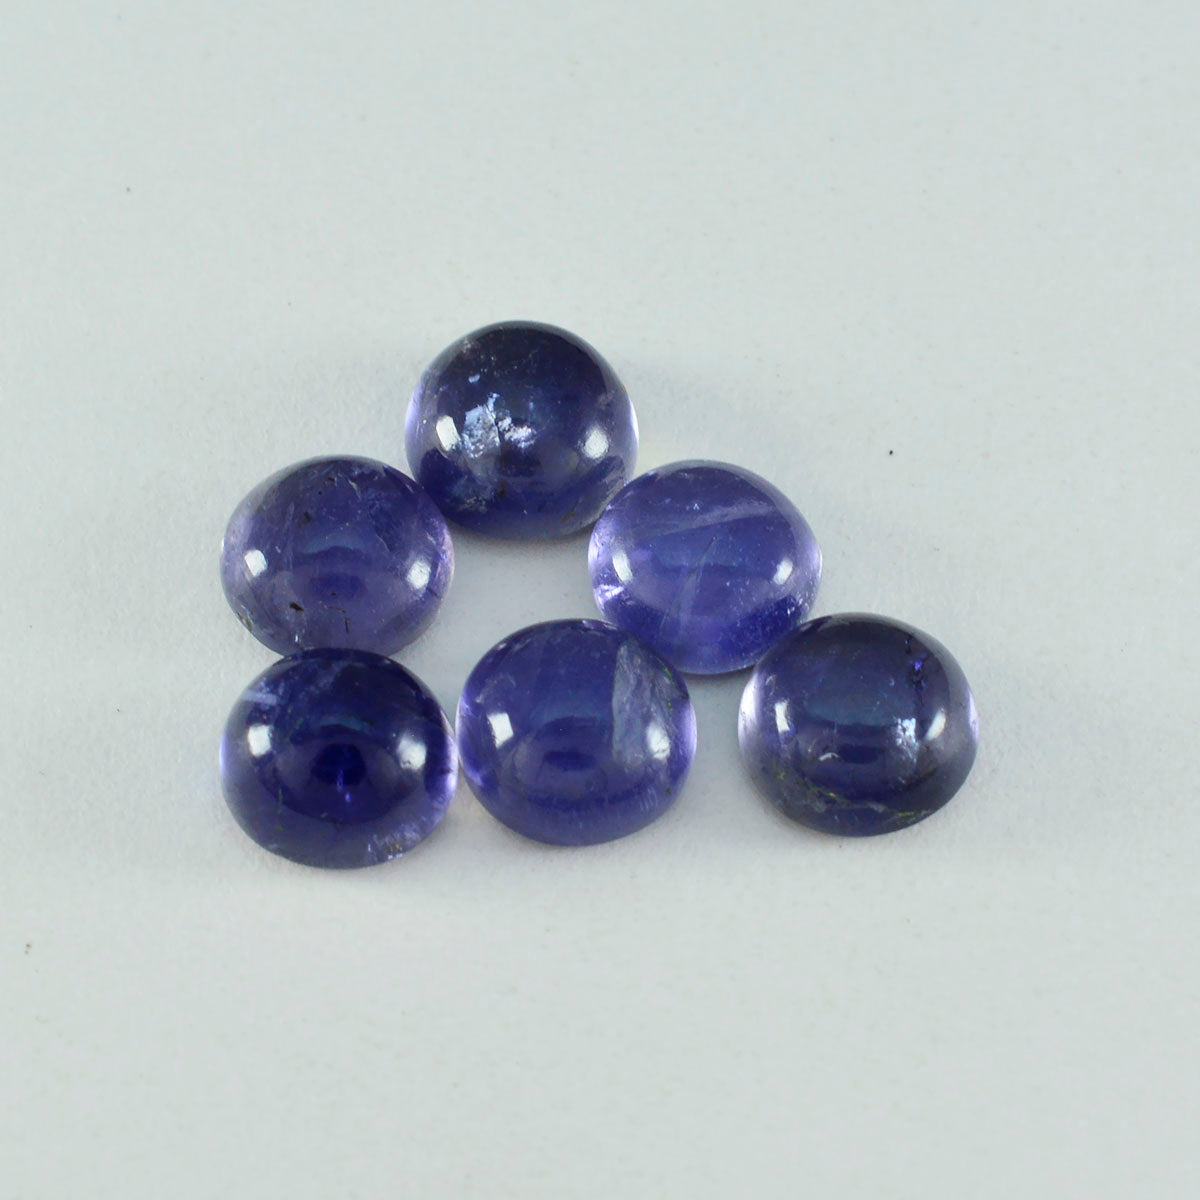 riyogems 1 шт. синий иолит кабошон 14x14 мм круглая форма, красивый качественный драгоценный камень